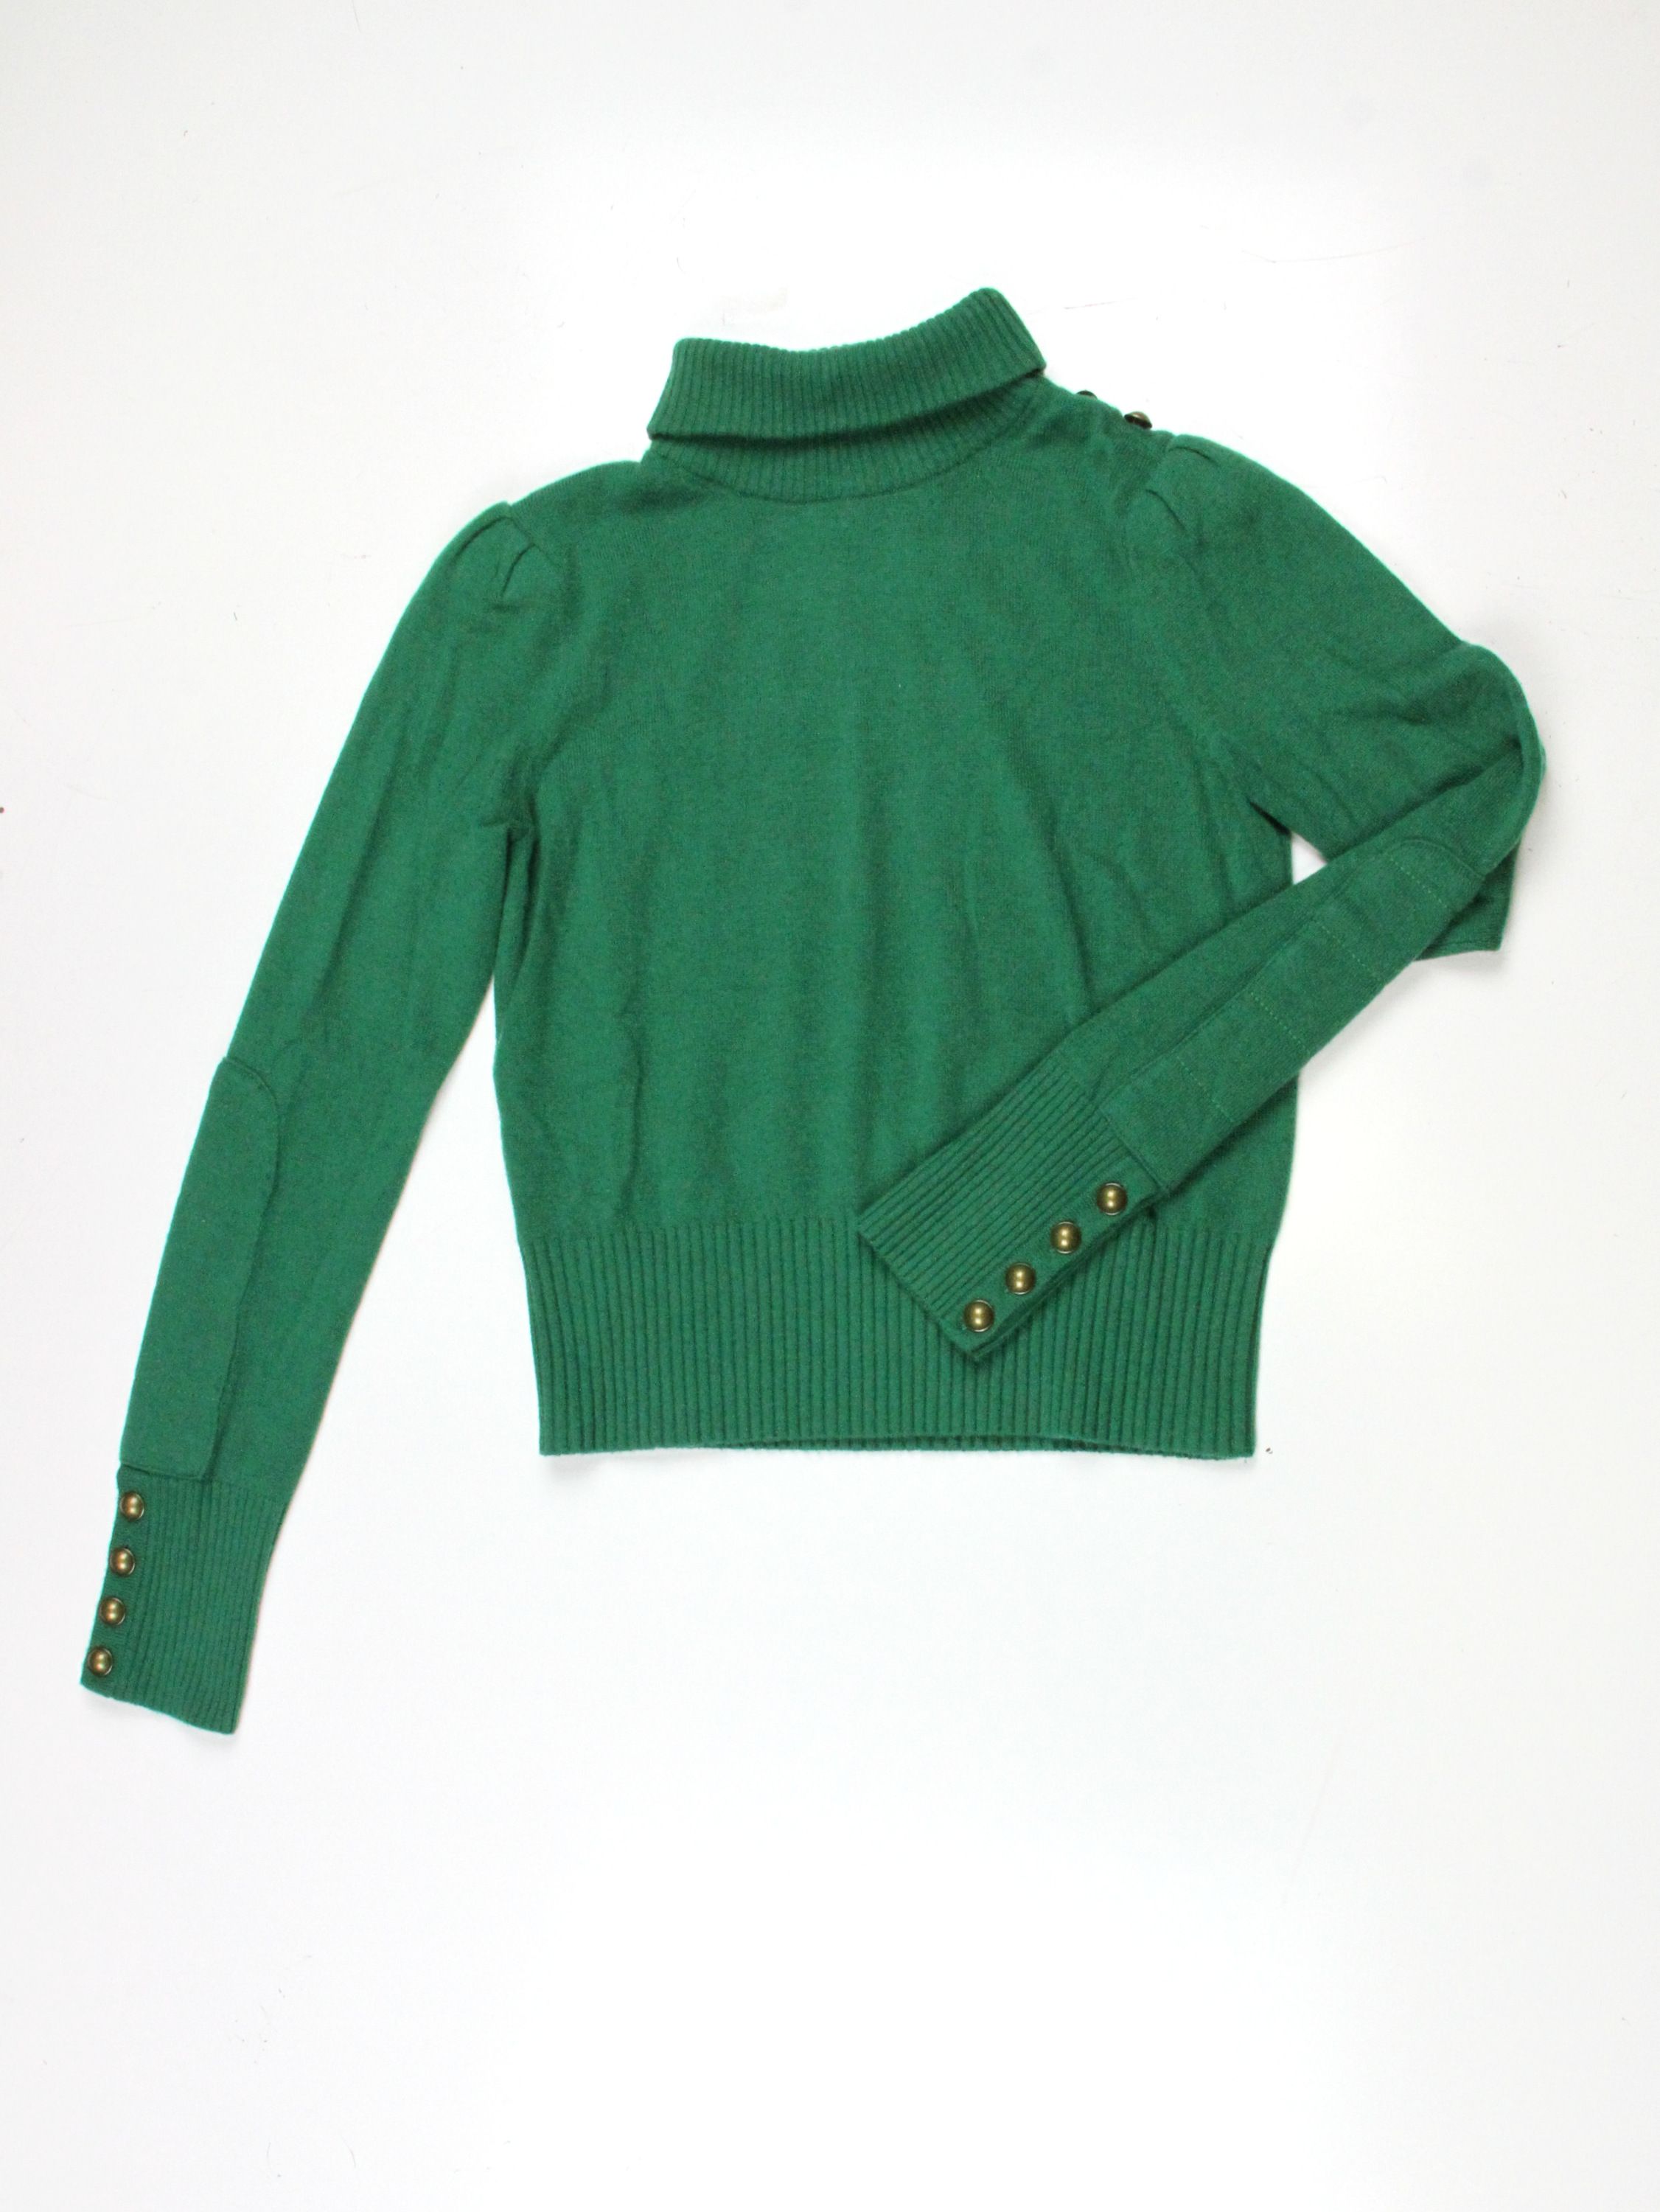 Diane Von Furstenberg Womens Chace Kelly Green Cashmere Sweater s $348 